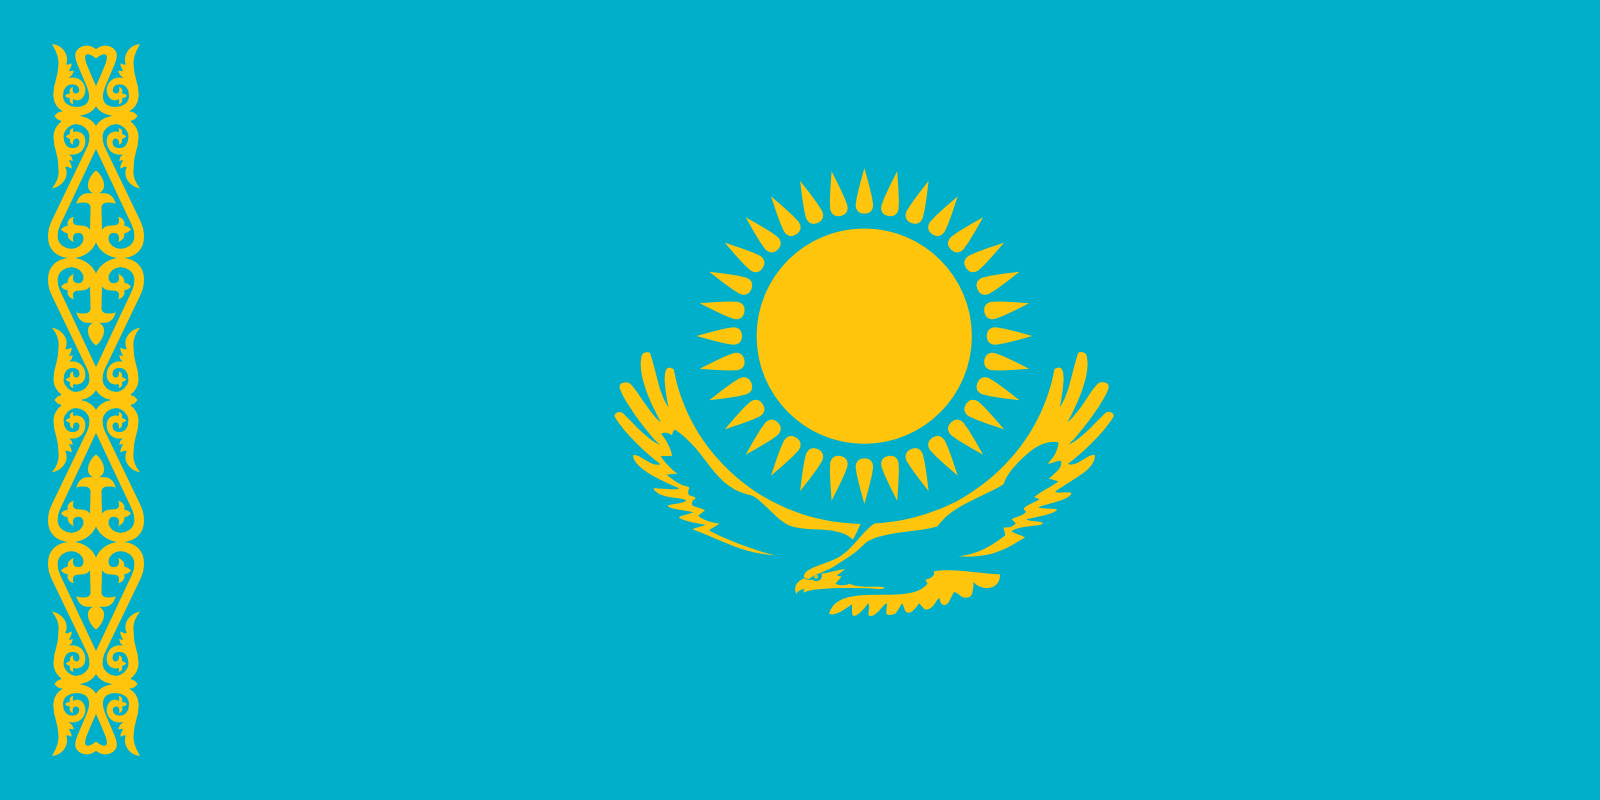 Bild der Staatsflagge Kasachstan - mit einer Auflösung von 1600x800 - Zentralasien